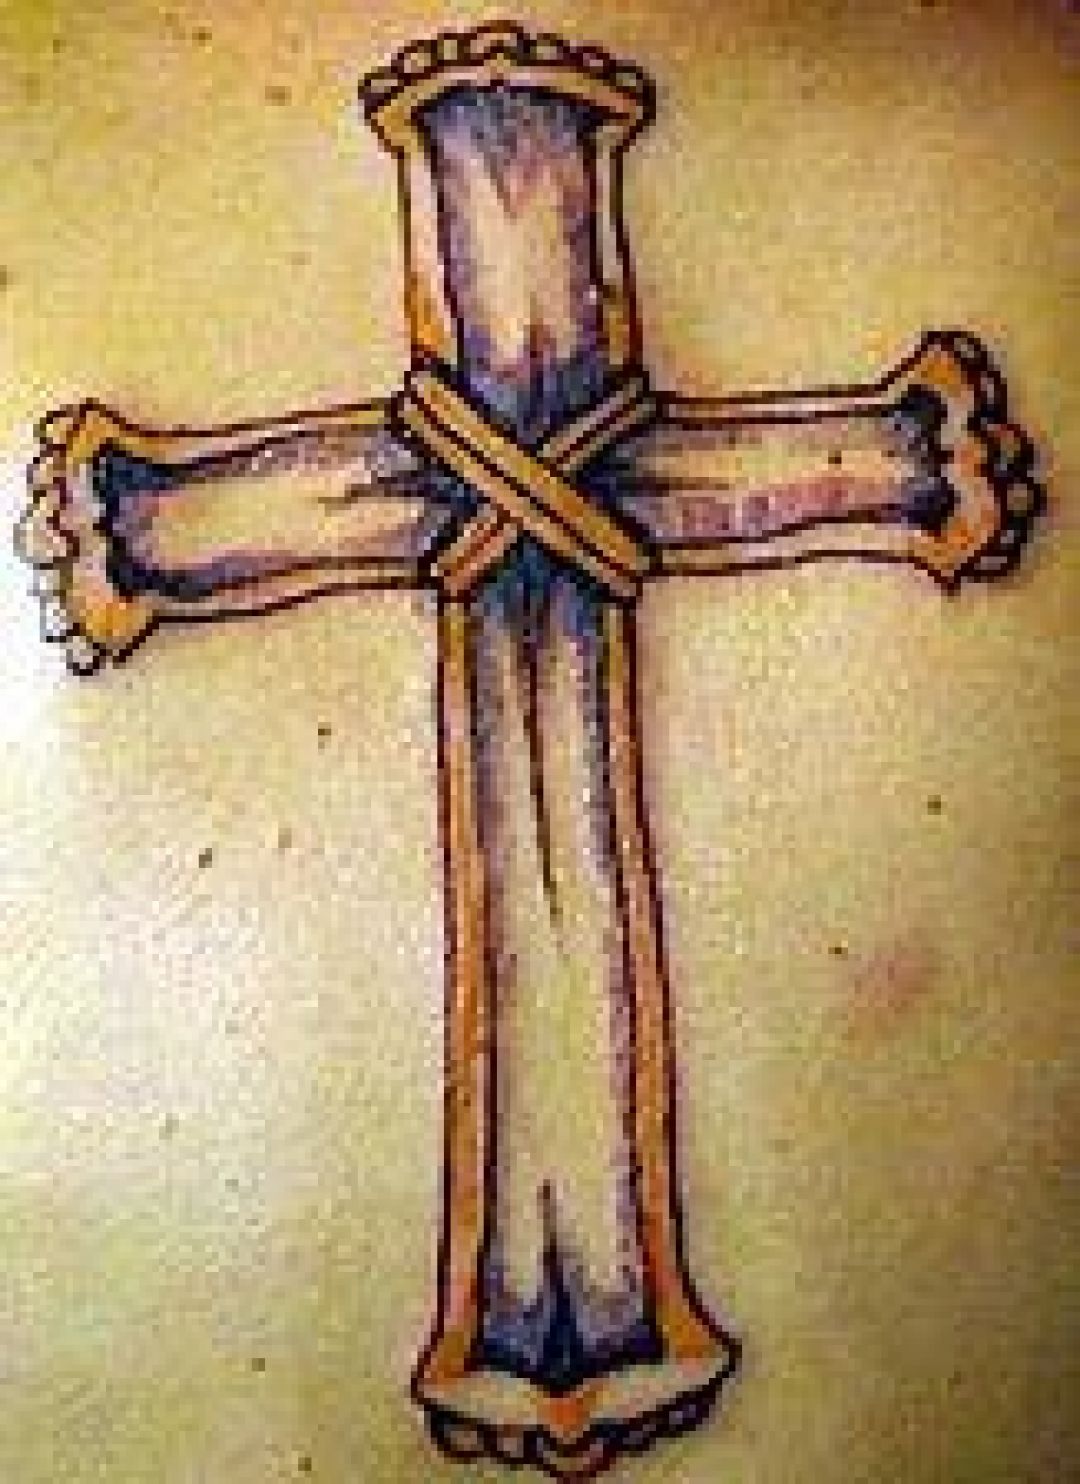 Крест по английски. Тату деревянный крест. Демидовский крест на наколку. Деревянный крест тату эскиз. Свиток с крестом тату.